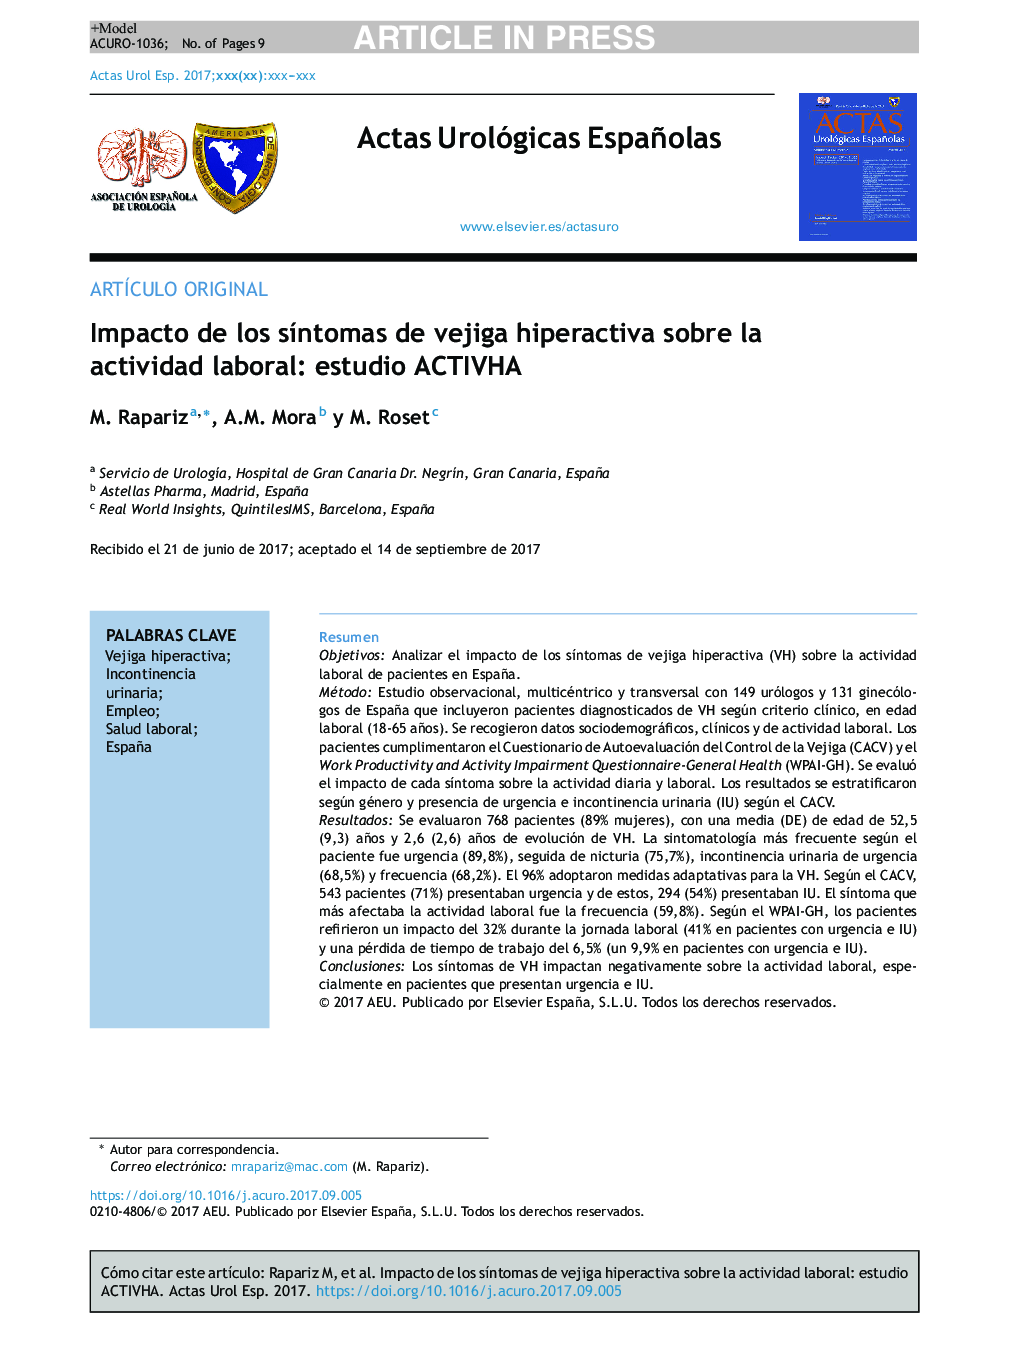 Impacto de los sÃ­ntomas de vejiga hiperactiva sobre la actividad laboral: estudio ACTIVHA